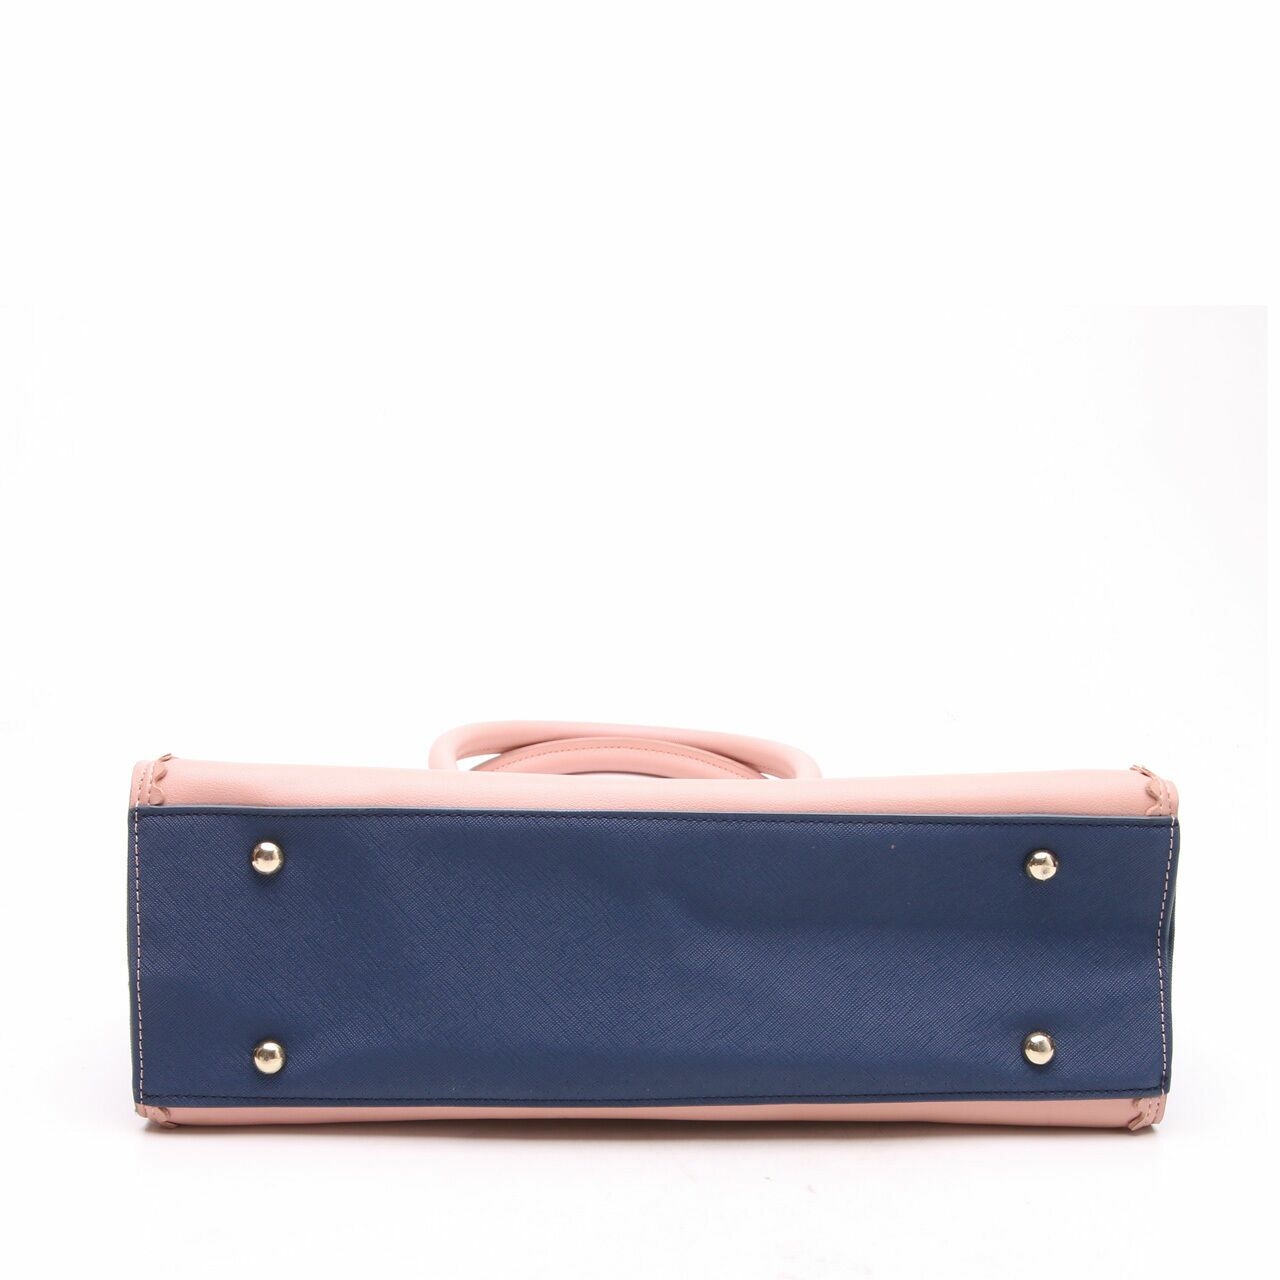 Pauls Boutique Pink Handbag